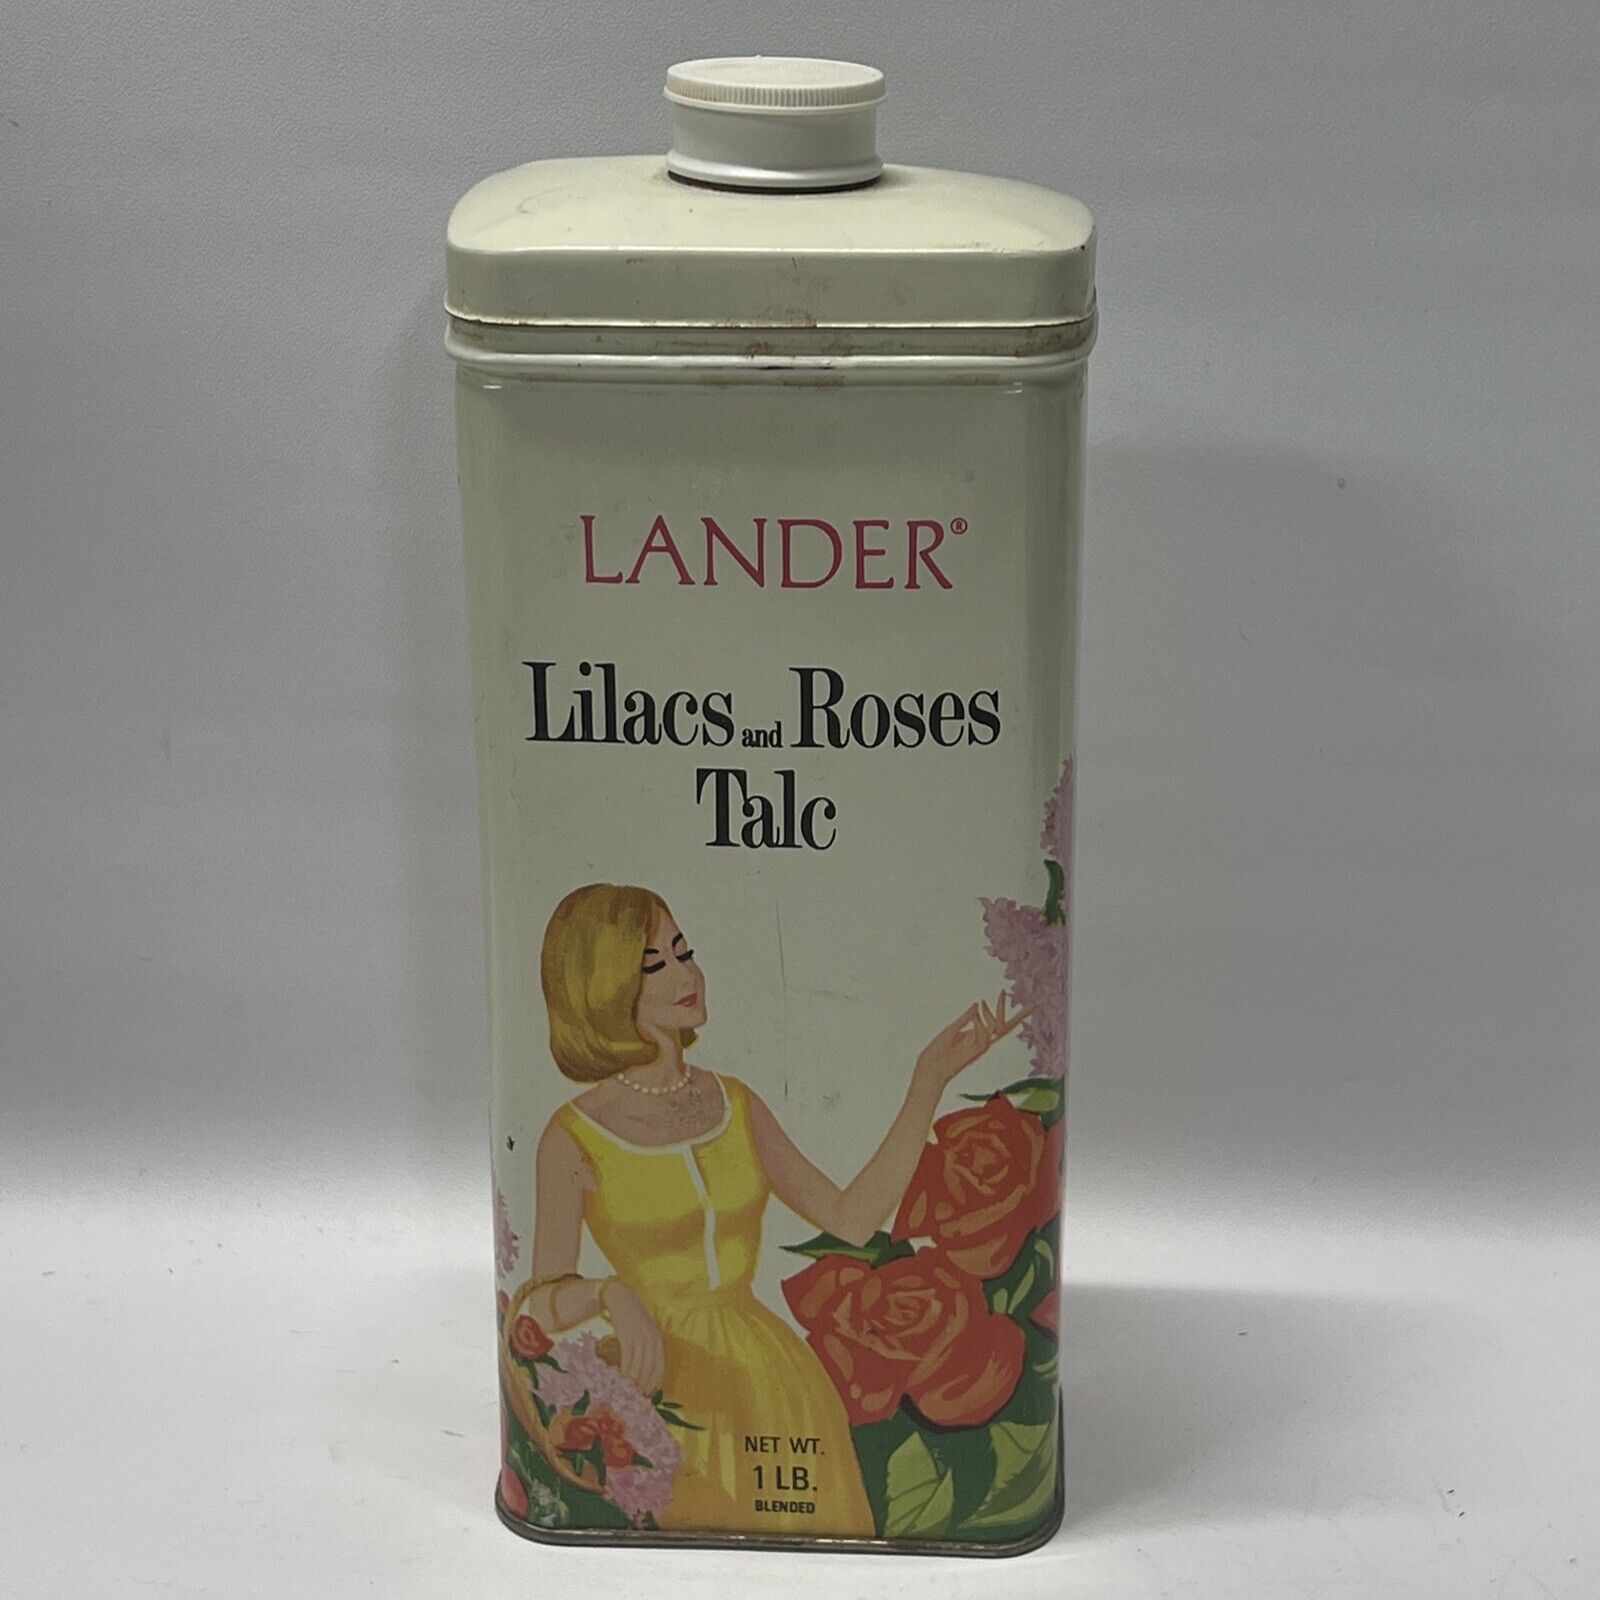 Lander 1 lb Lilacs and Roses Tin Prop Set Display 70’s Bathroom Display EMPTY